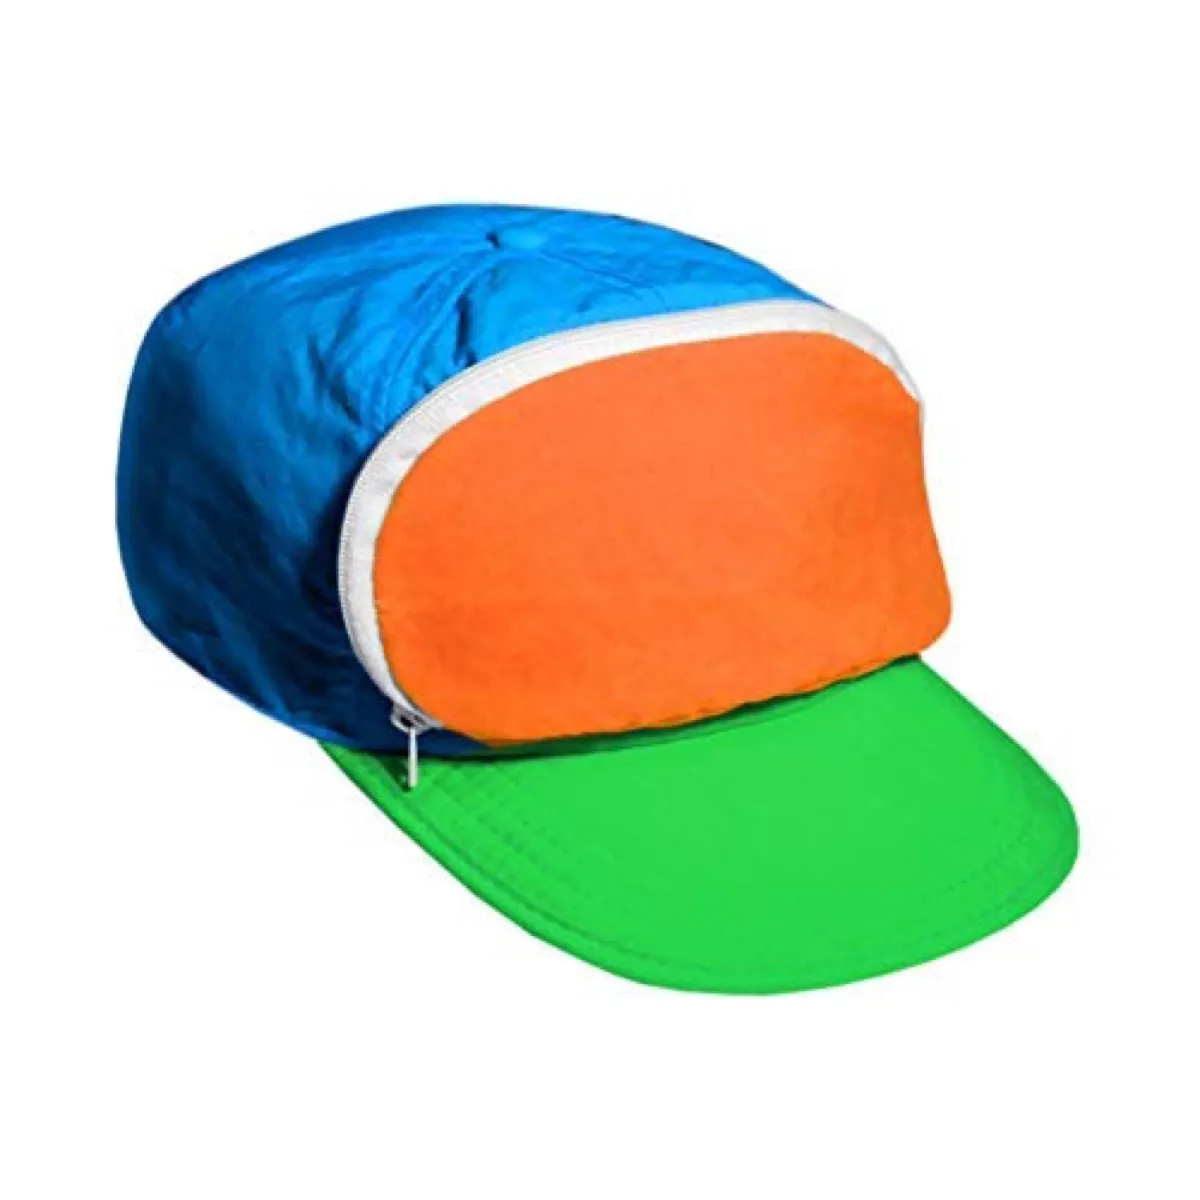 the cap sack hat